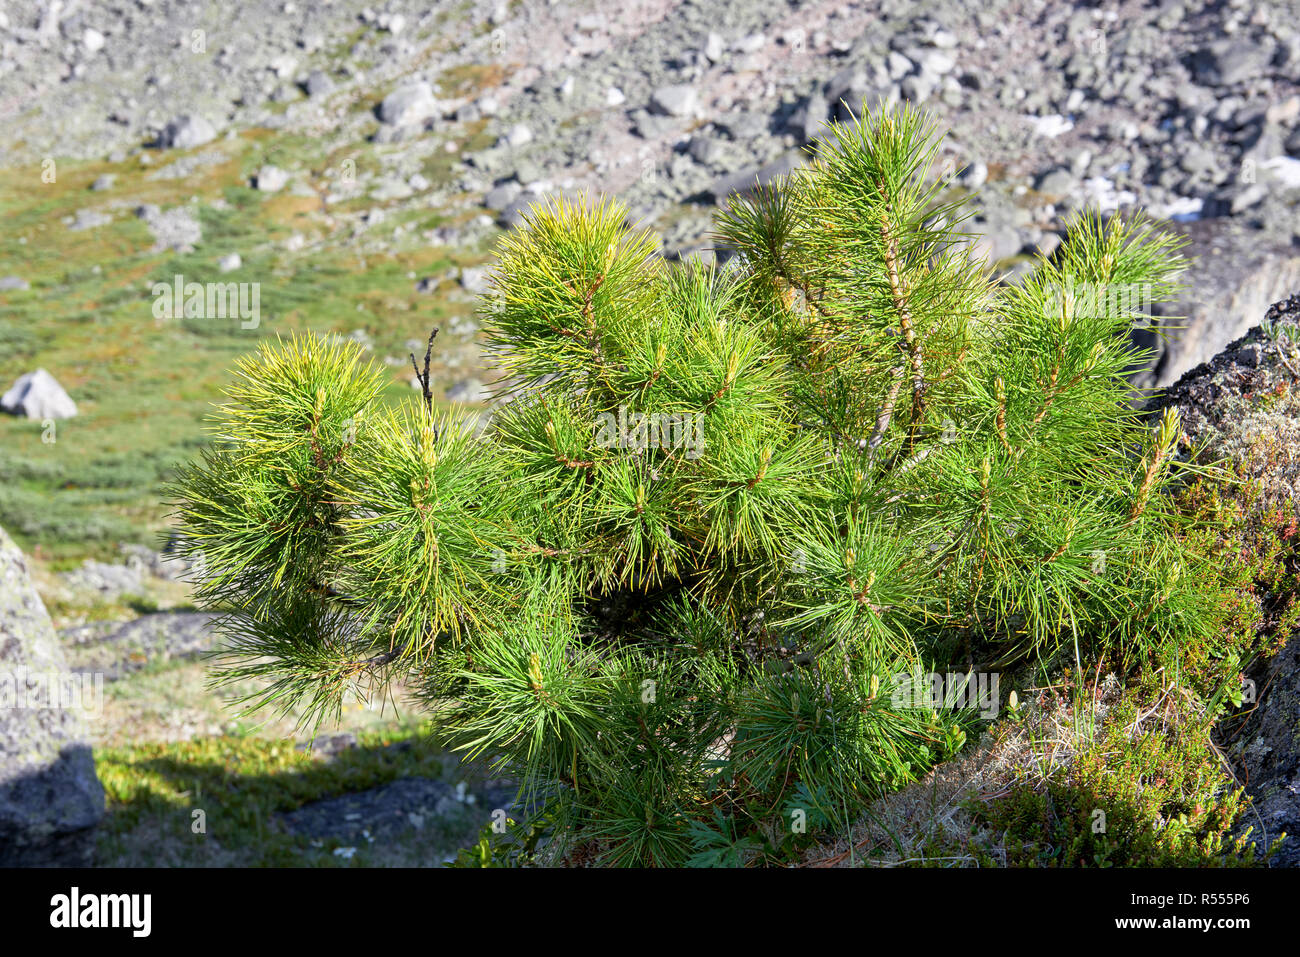 Siberian dwarf pine in mountain tundra. Eastern Sayan. Russia Stock Photo